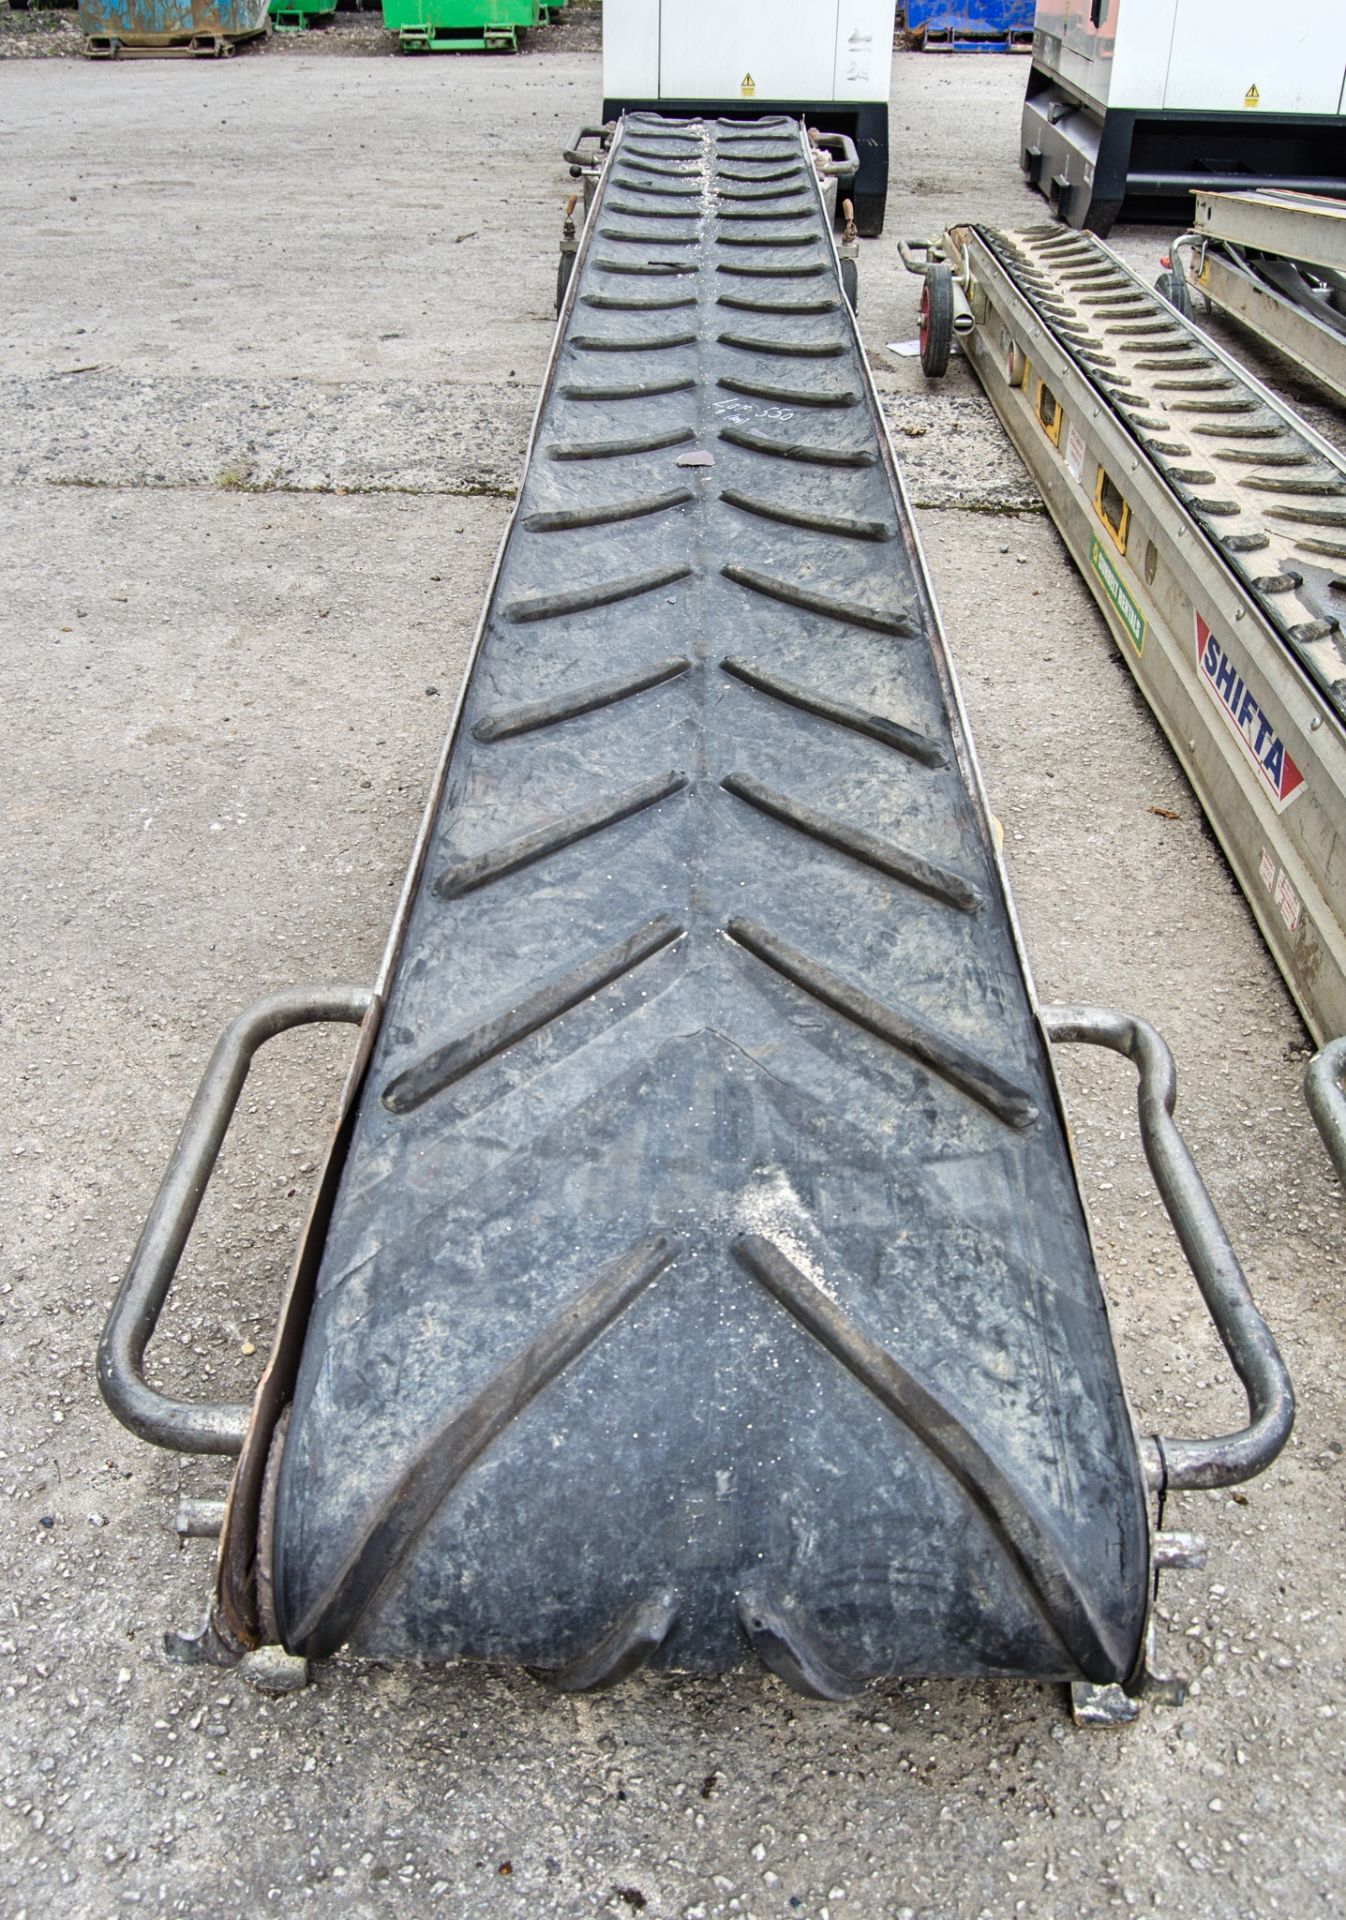 Mace Shifta 110v rubble conveyor hoist A749122 - Image 3 of 3